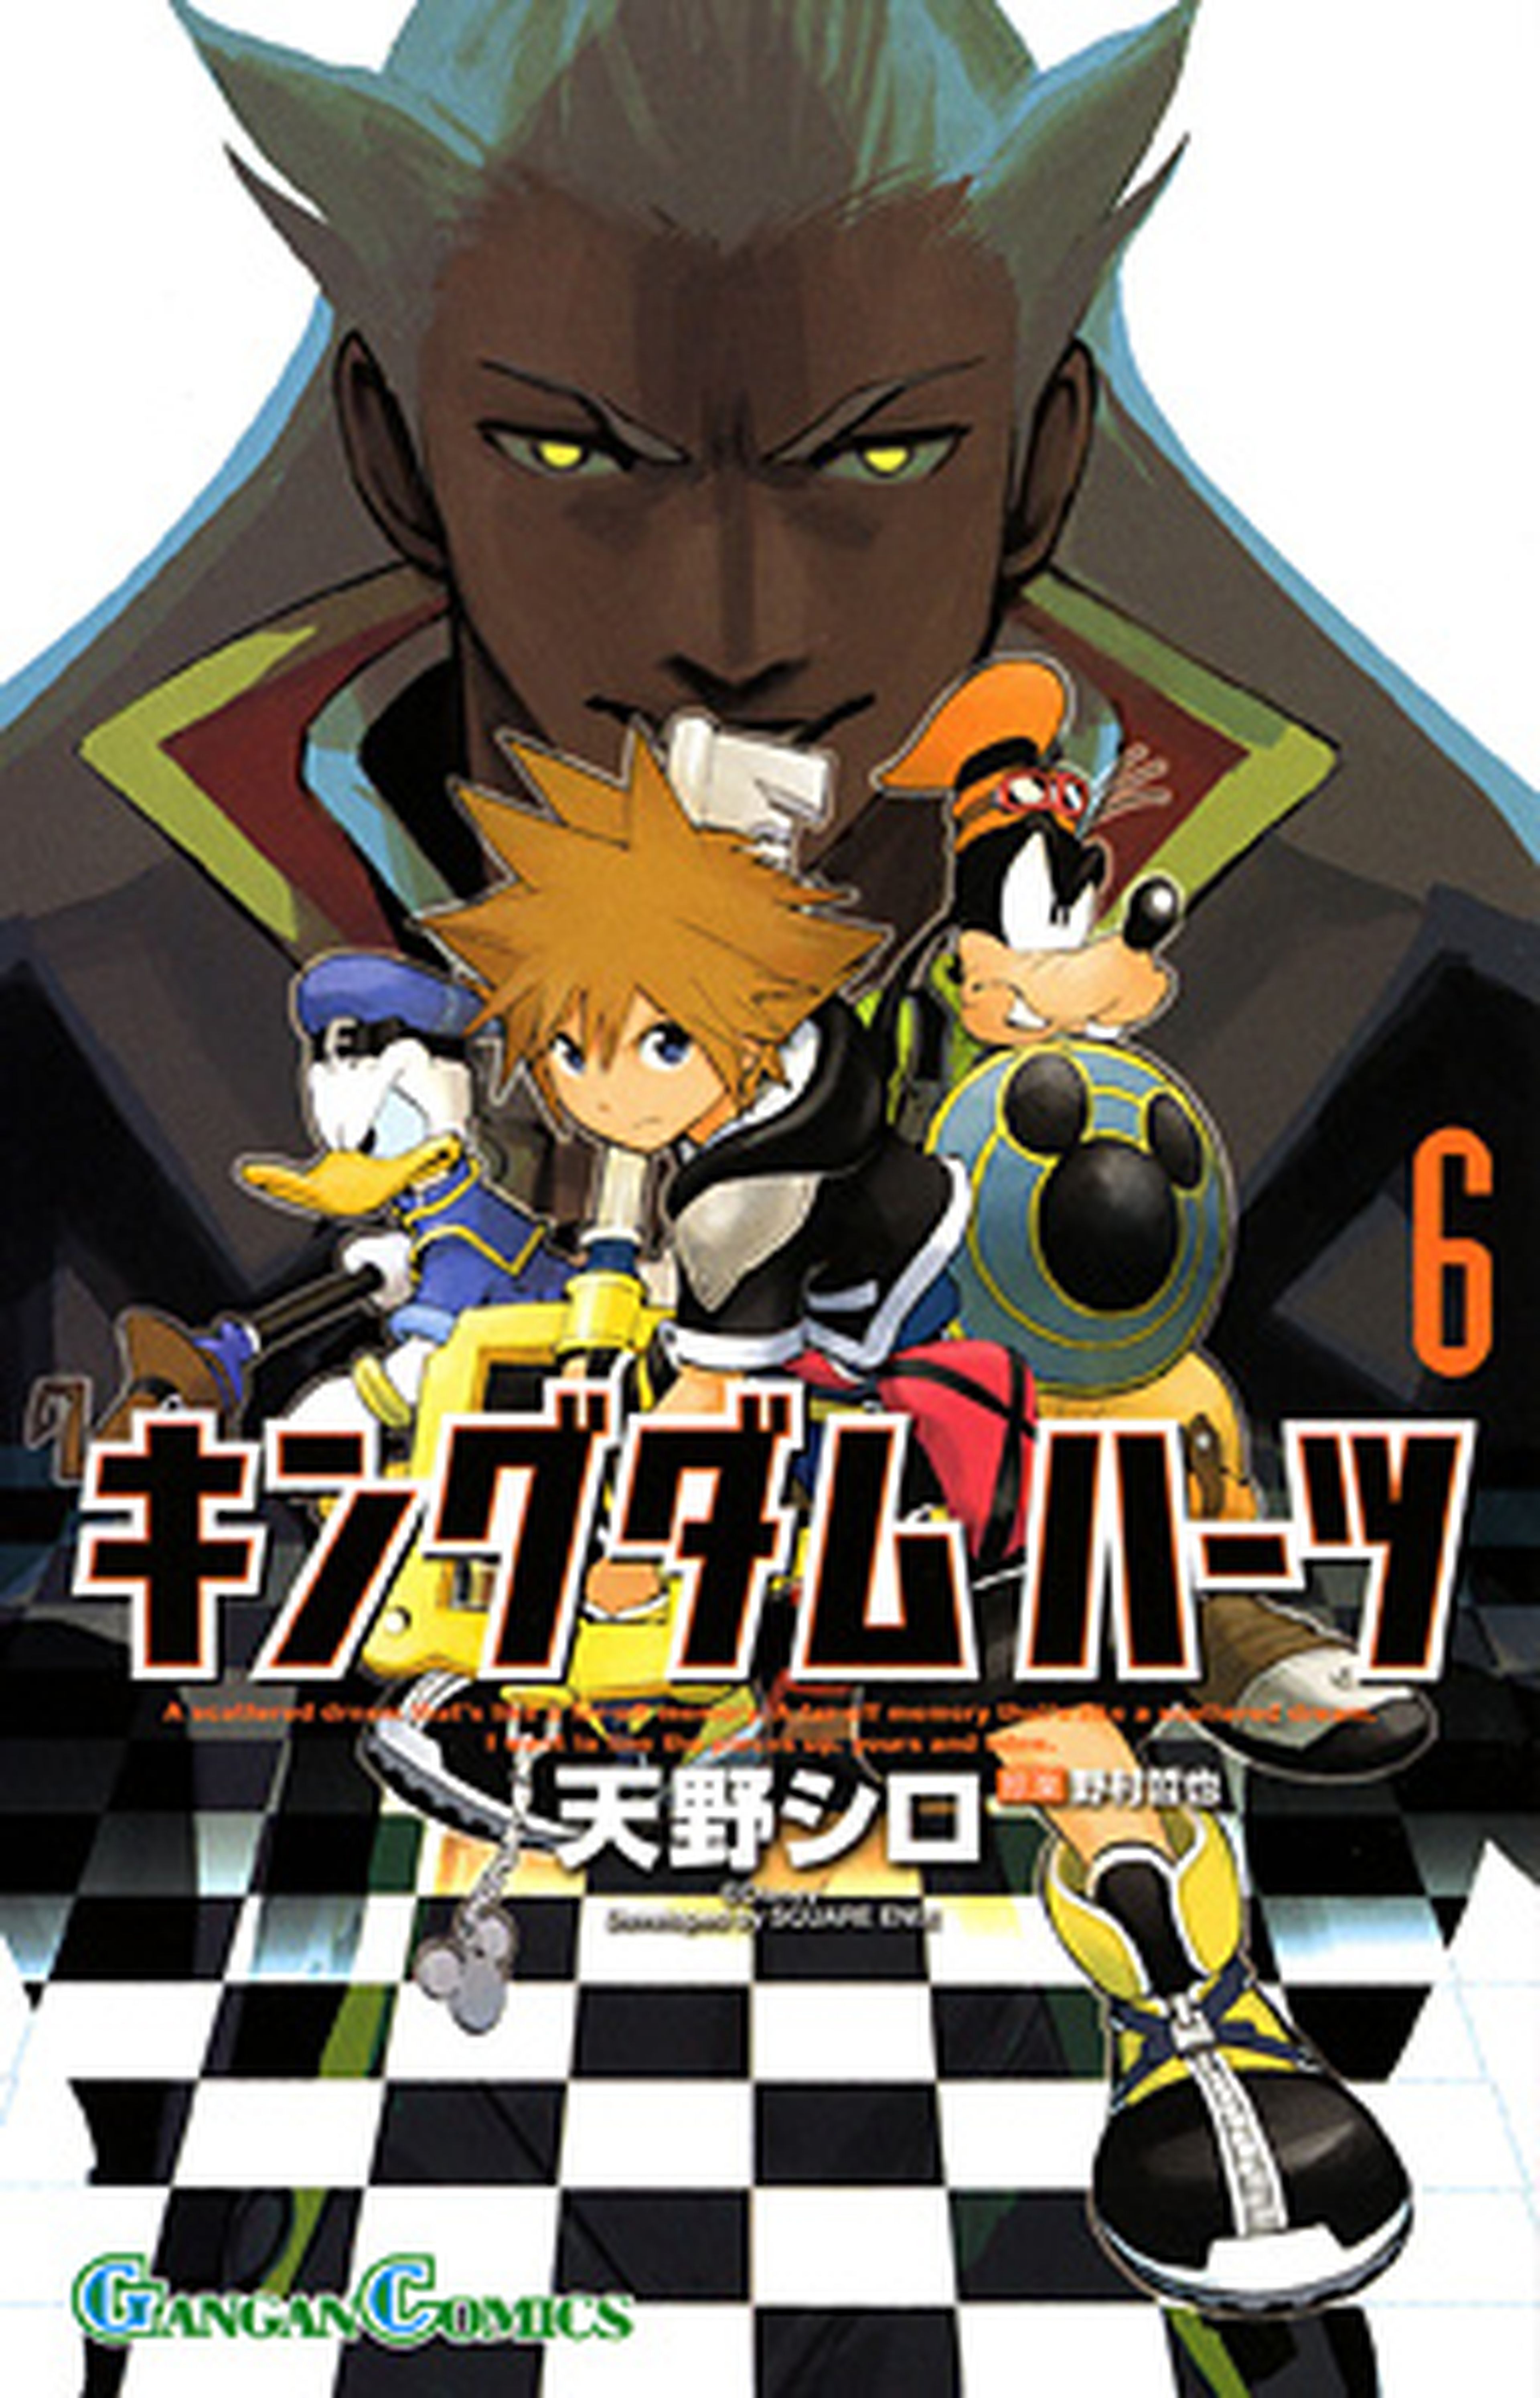 El tomo 6 de Kingdom Hearts II sale en Japón este mes